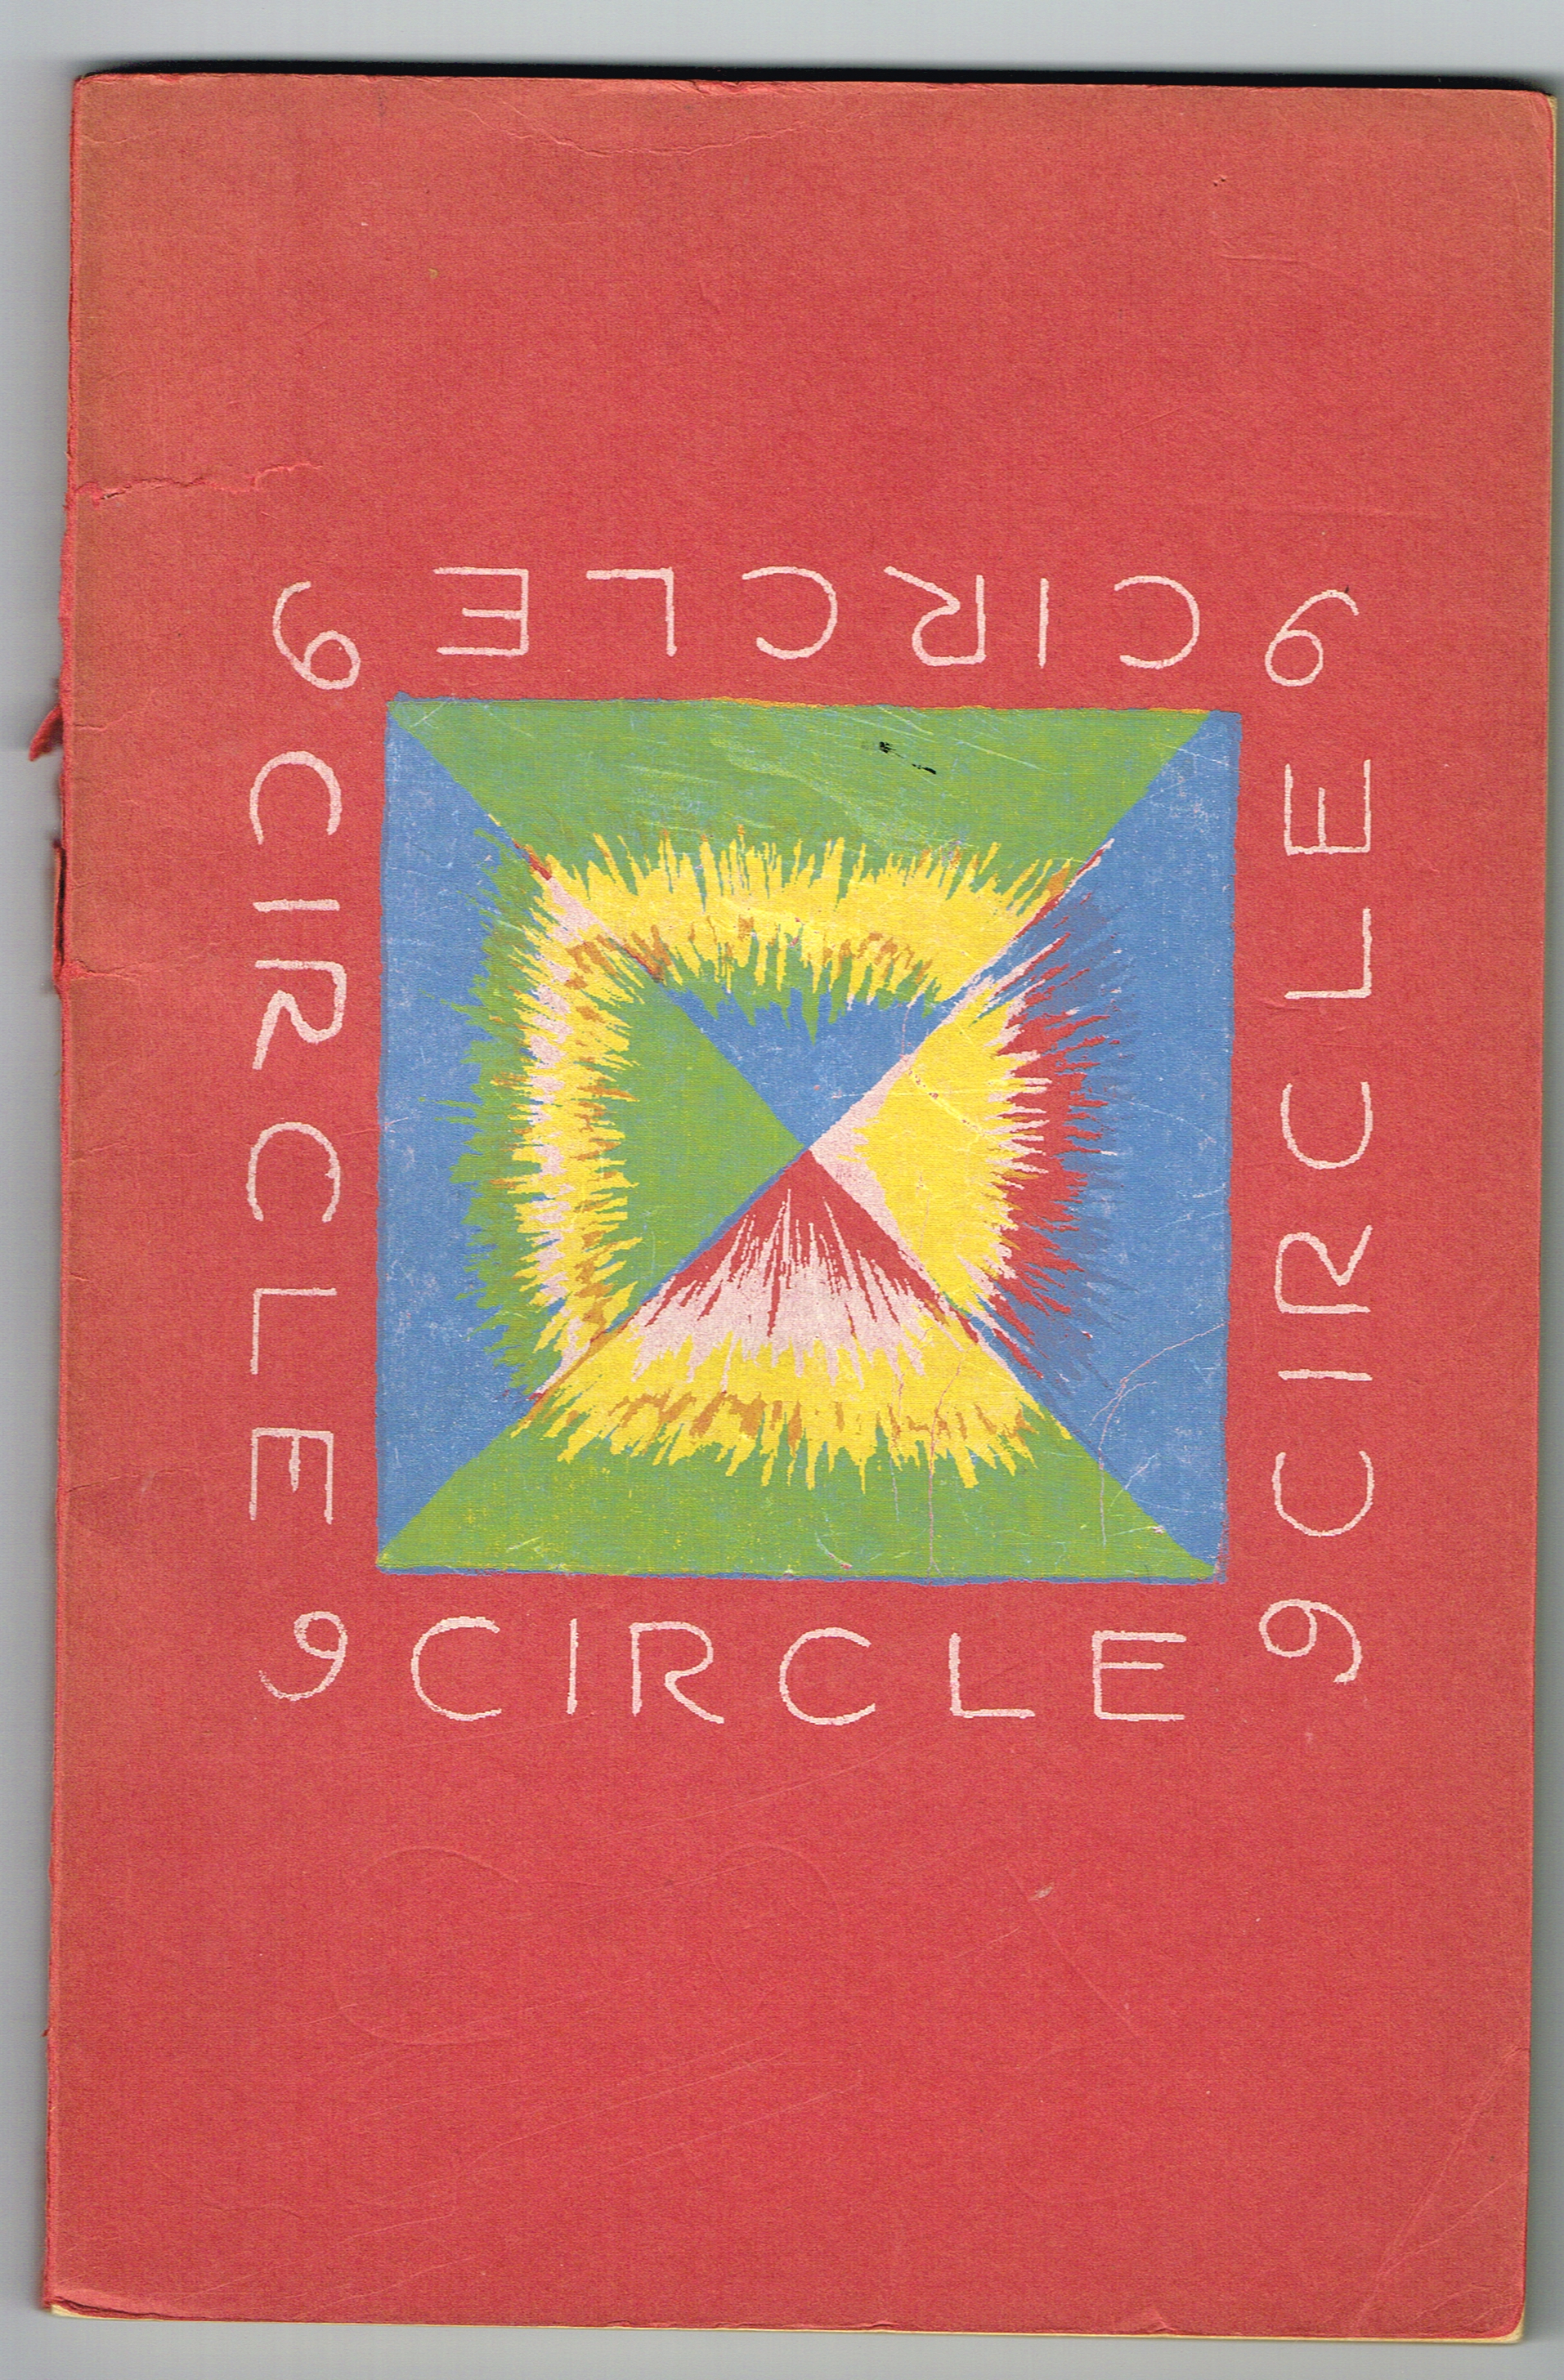 Leite's Circle Magazine No. 2